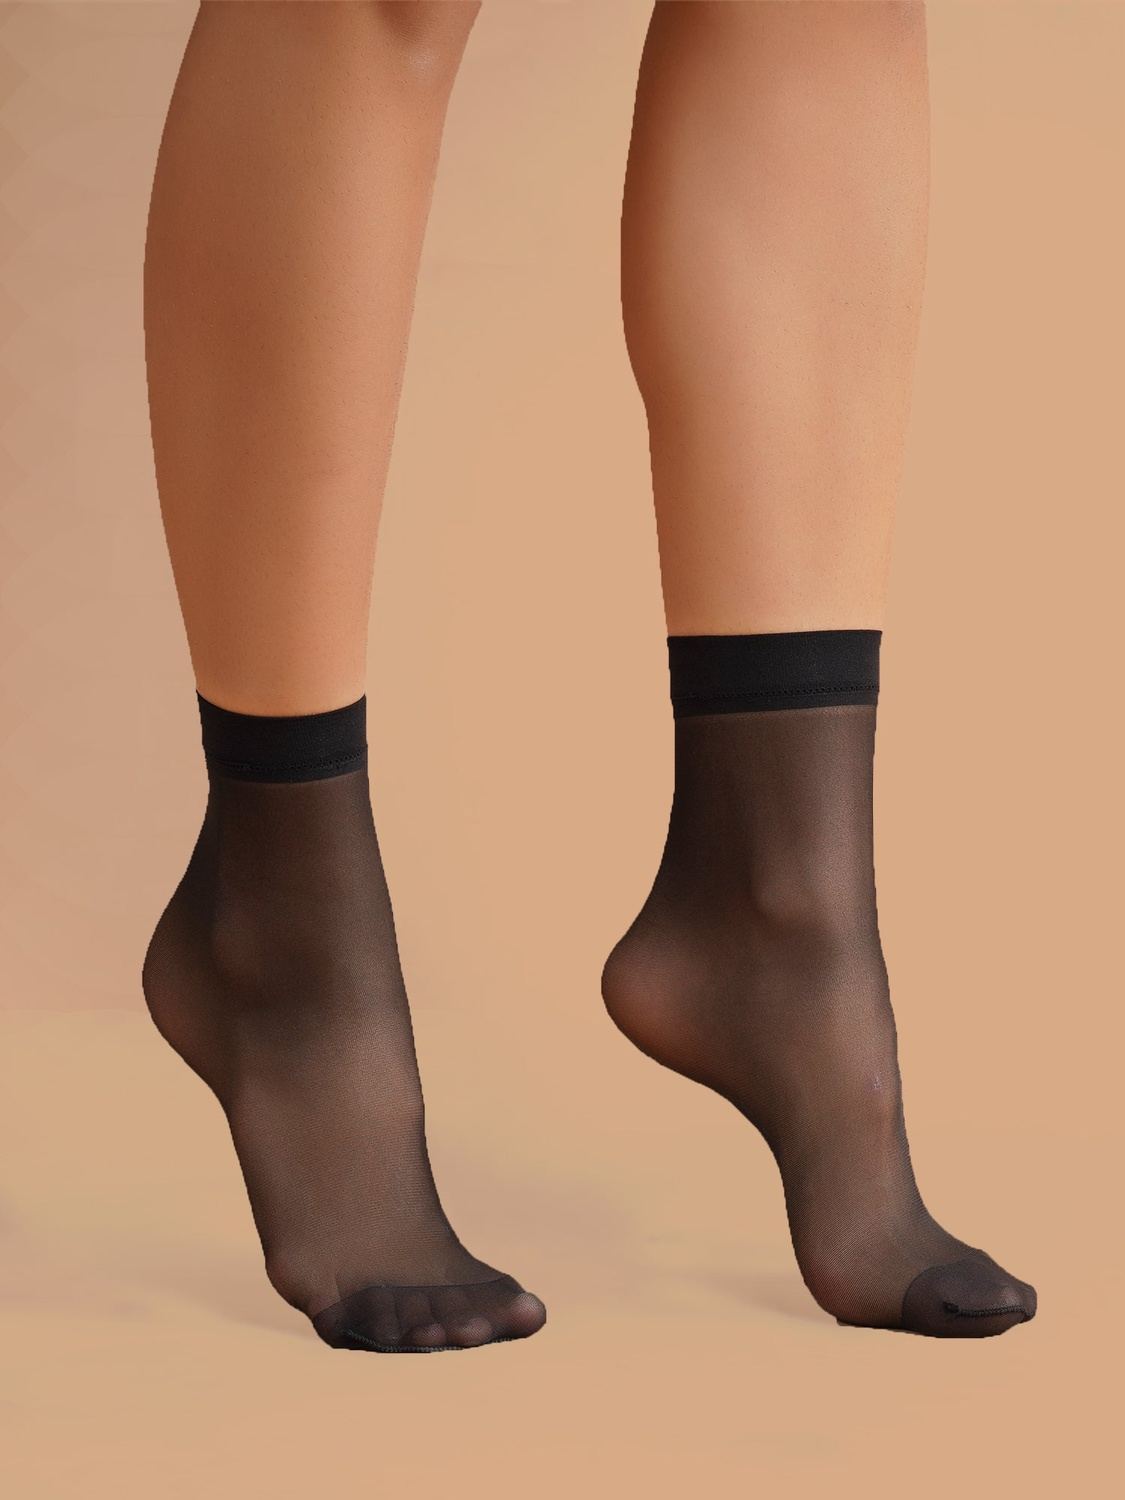 Sheer Ankle Socks - Black